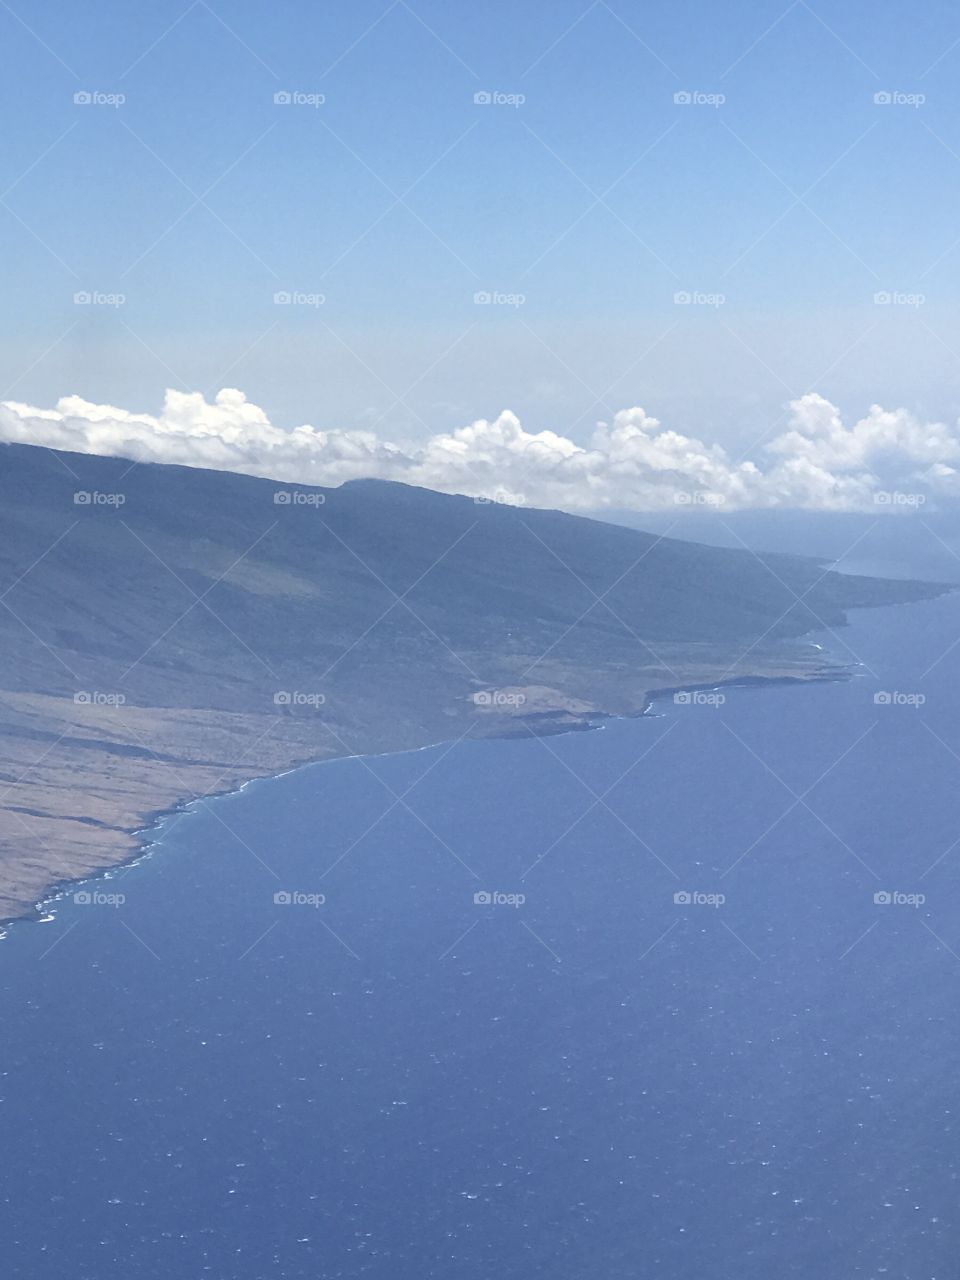 Maui island 